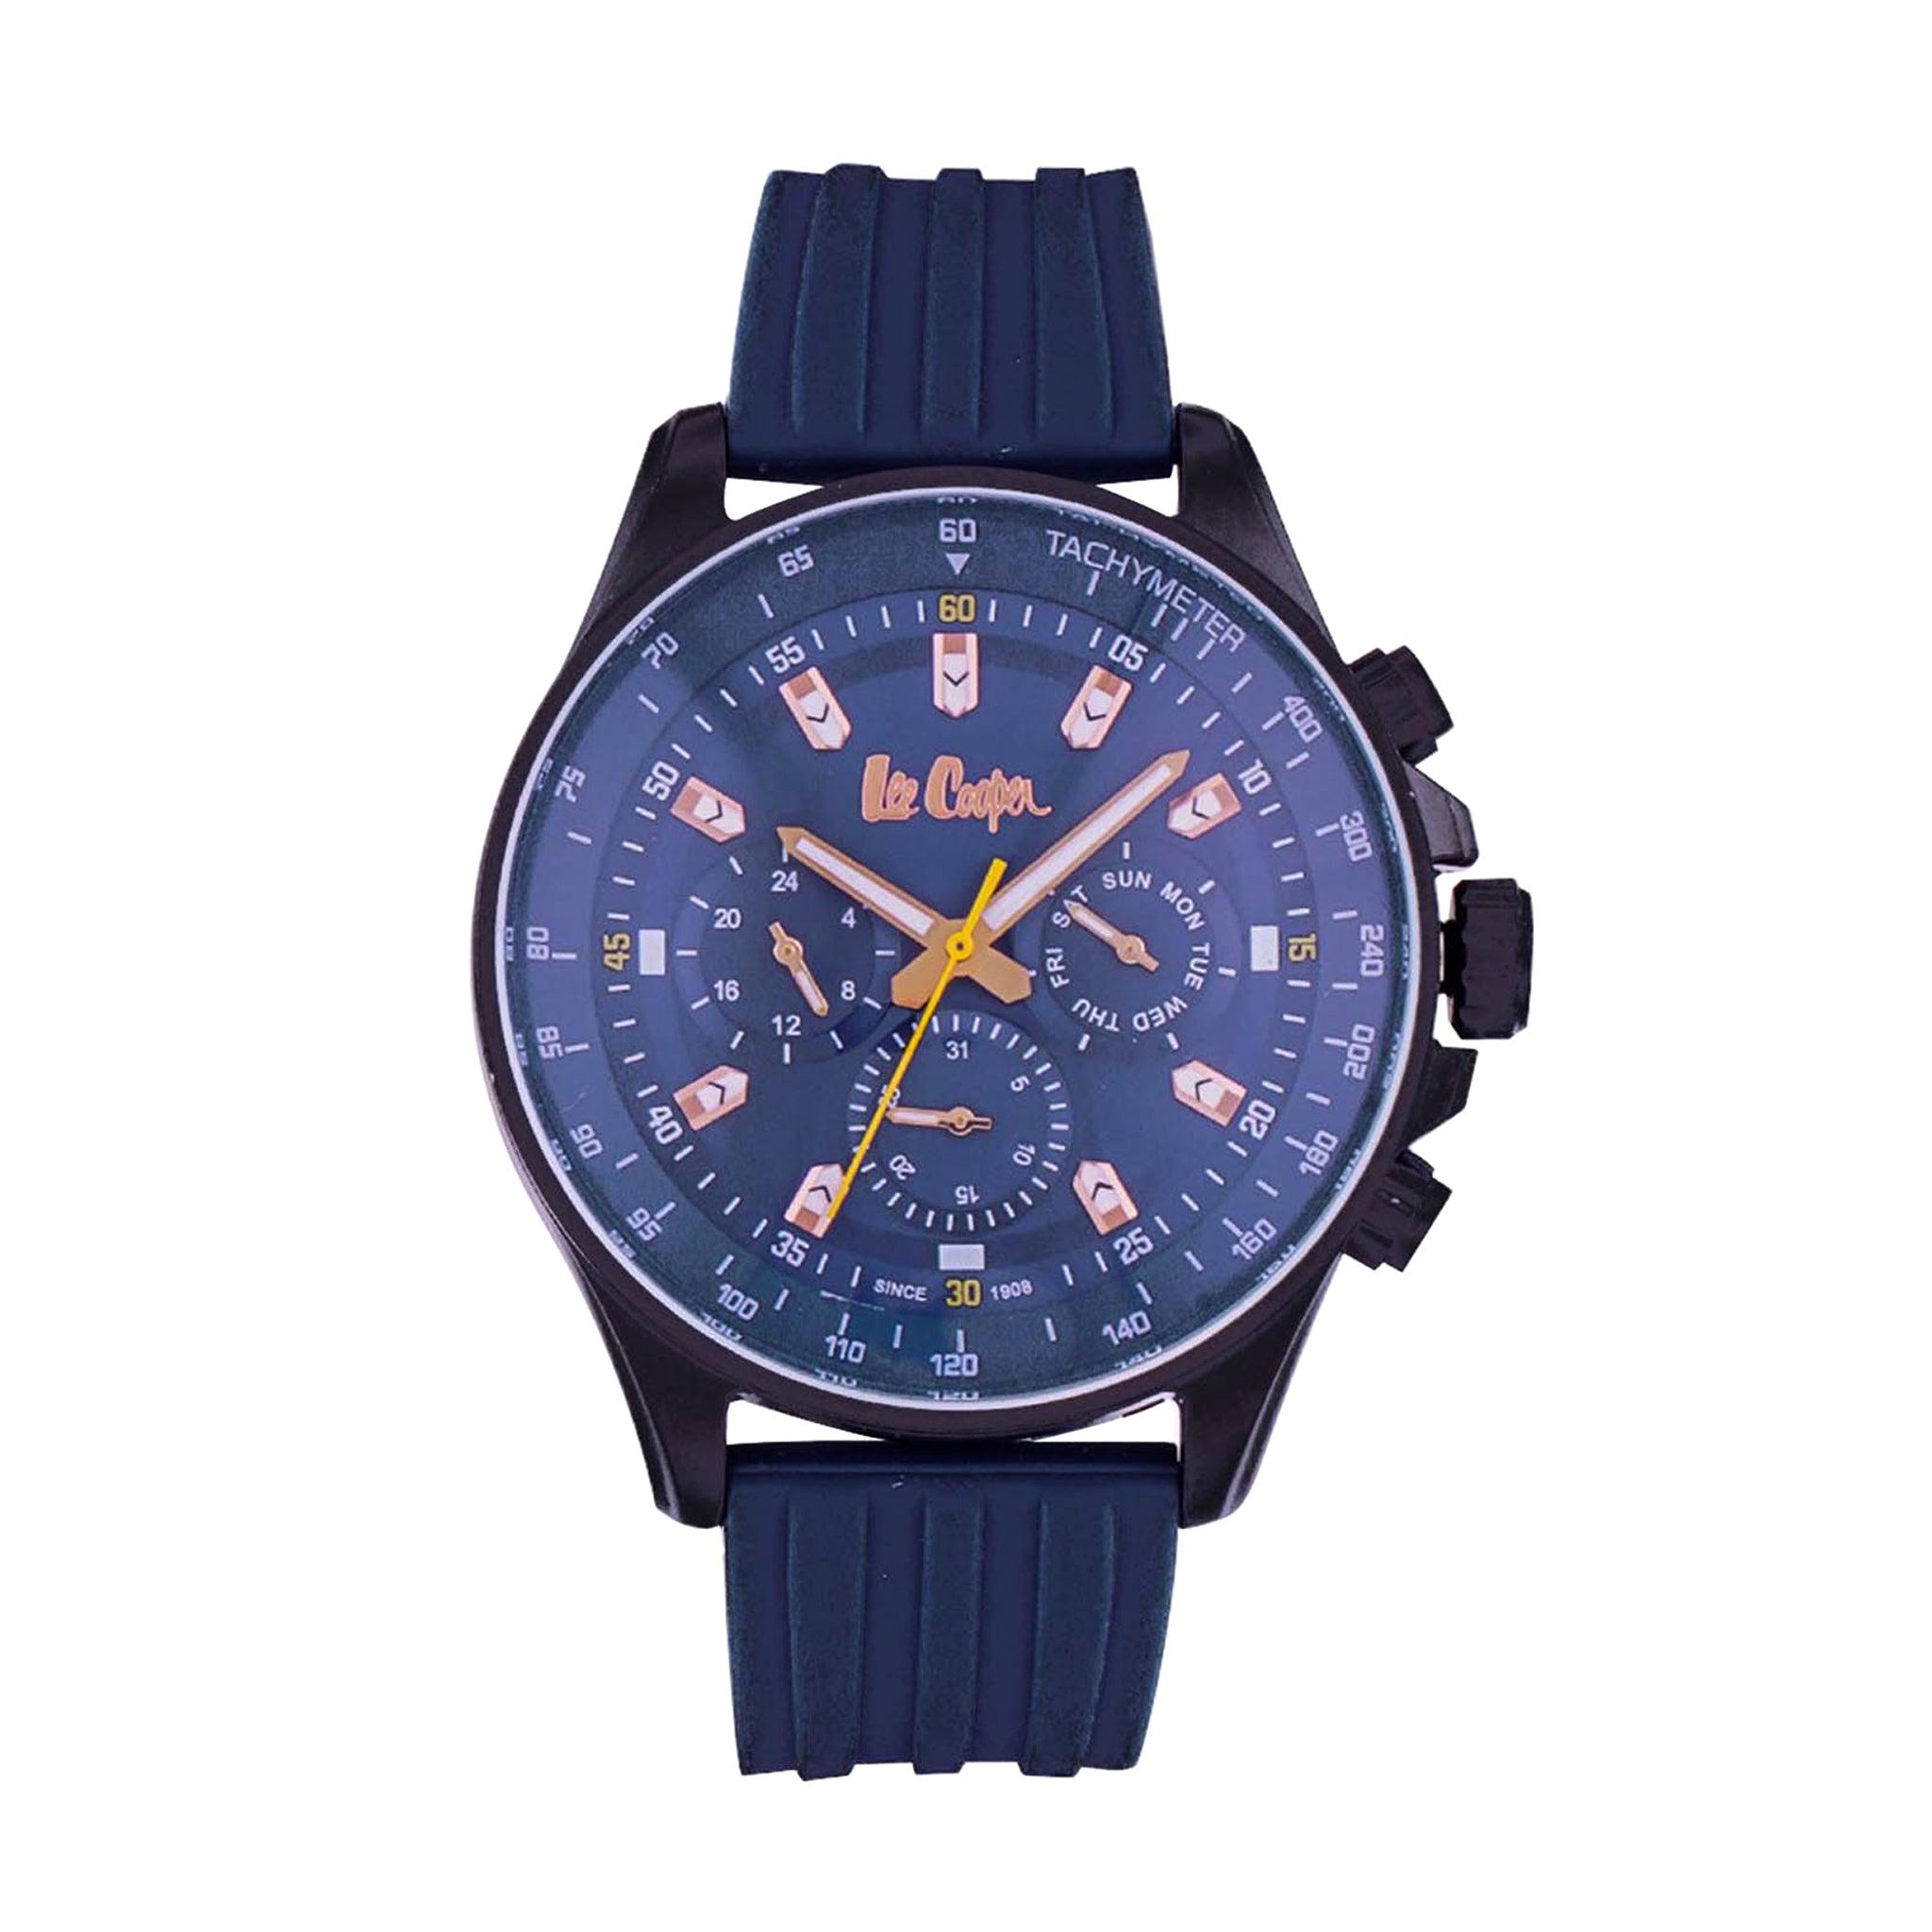 ساعة يد رجالية  - أزرق و أسود و مينا باللون الأزرق - بحزام أزرق من السيليكون لي كوبر Lee Cooper Multifunction Men's Watch